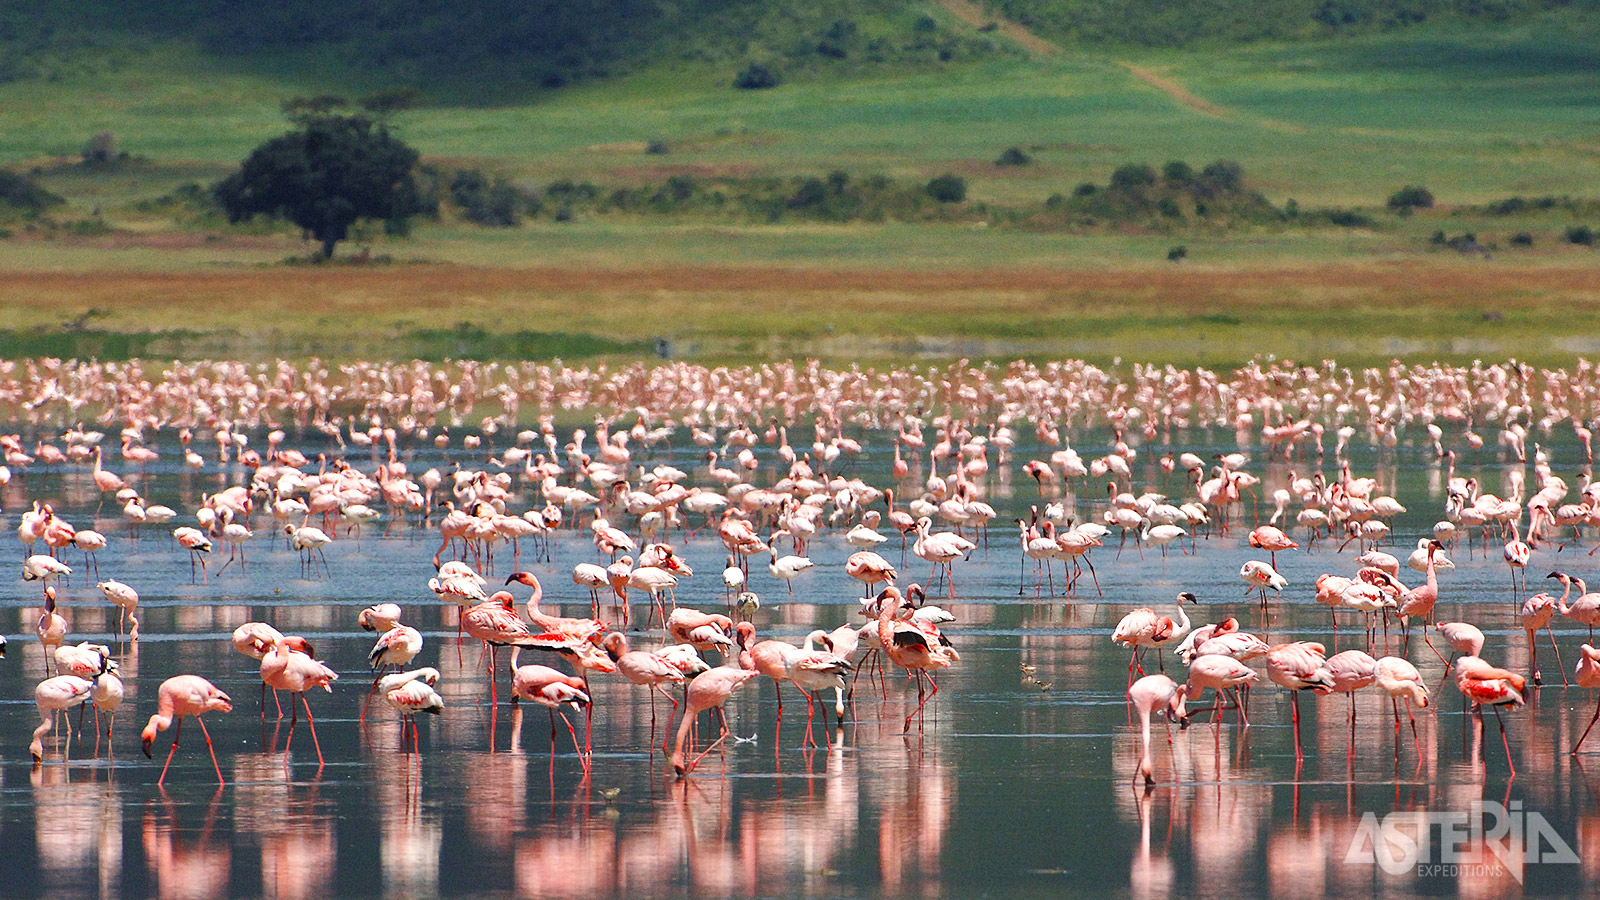 Op het Ngorongoro kratermeer leven duizenden flamingo’s die in het zilte water zoeken naar voedsel